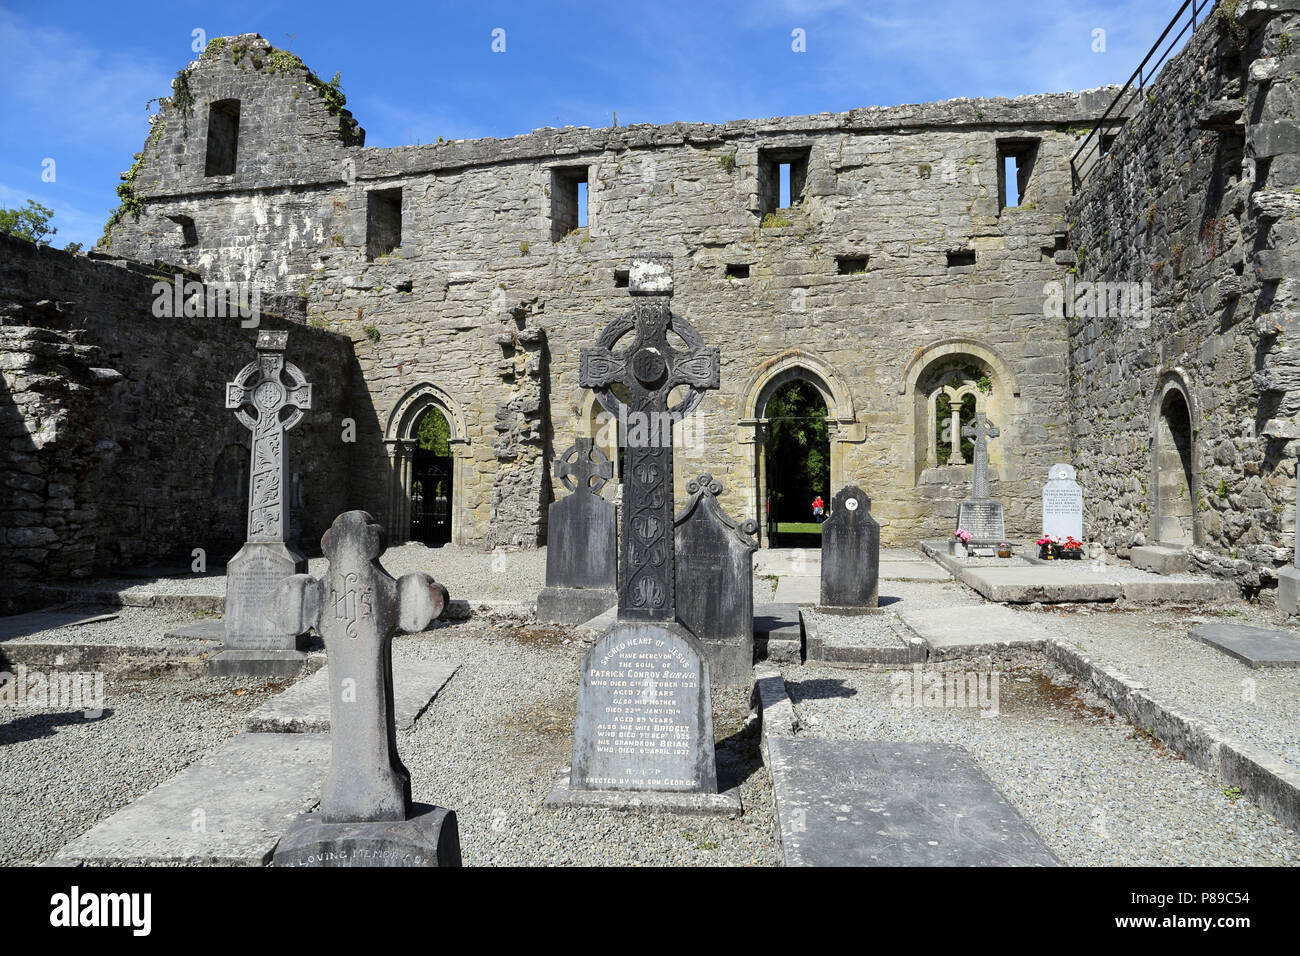 Cong Abbey è un sito storico situato a Cong, sul confine delle contee di Galway e Mayo, in Irlanda la provincia di Connacht. Le rovine della ex Foto Stock